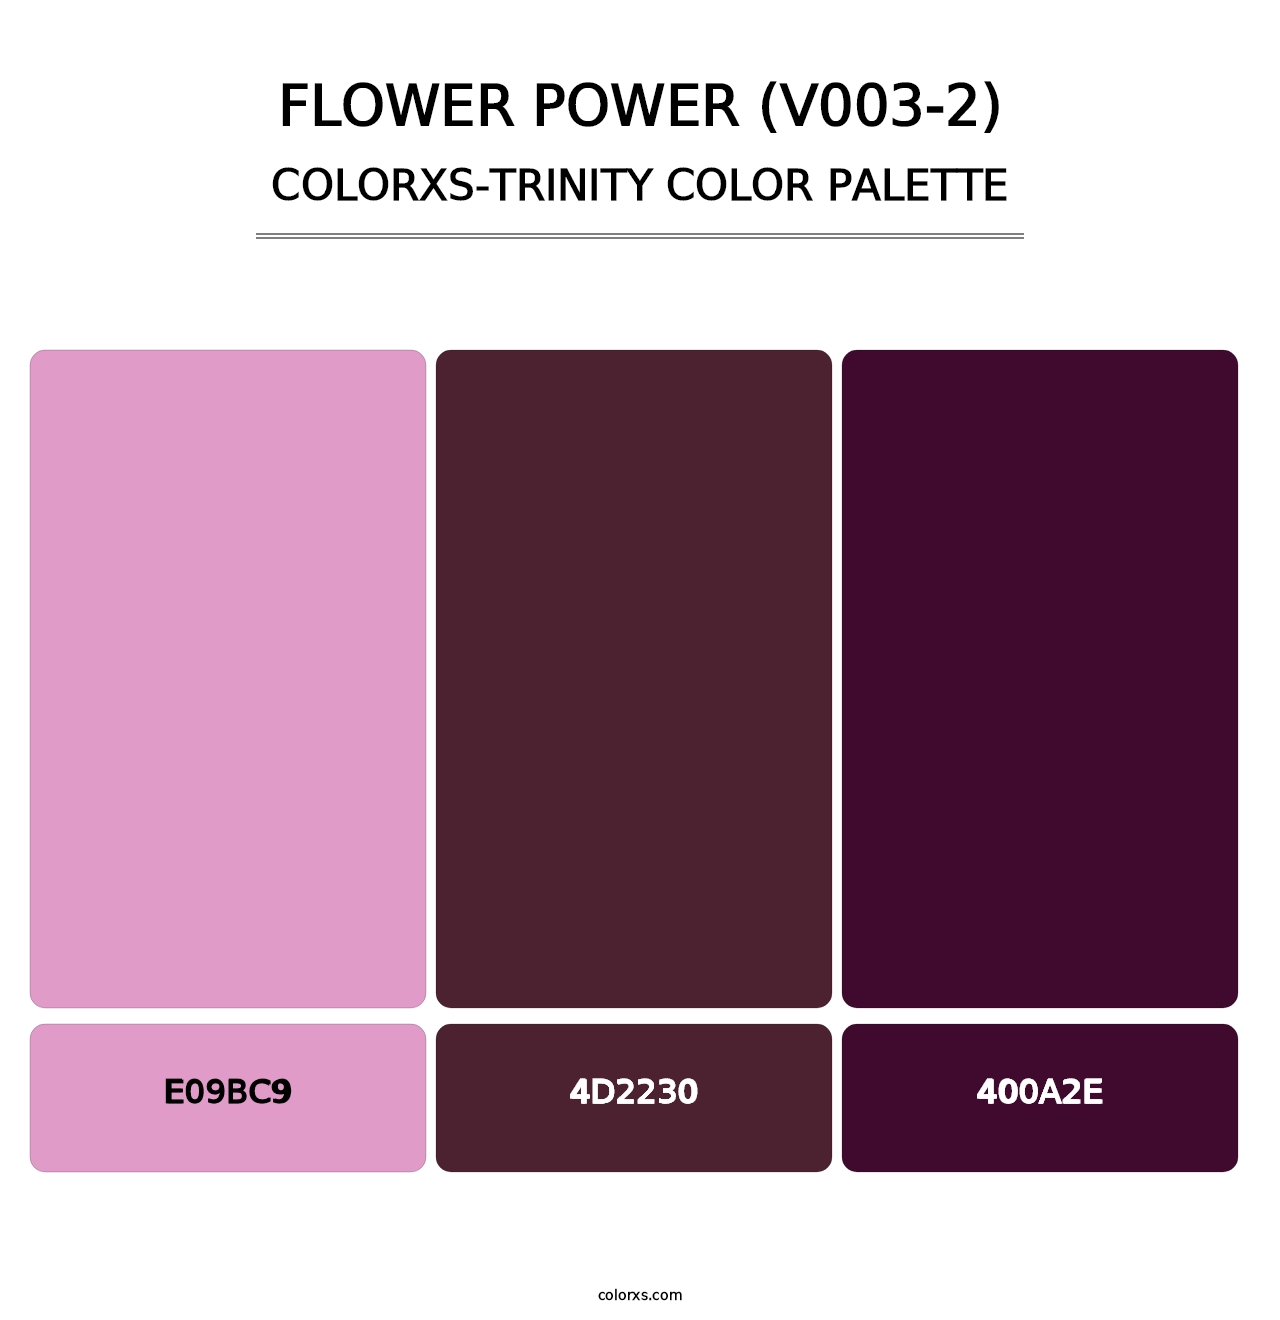 Flower Power (V003-2) - Colorxs Trinity Palette